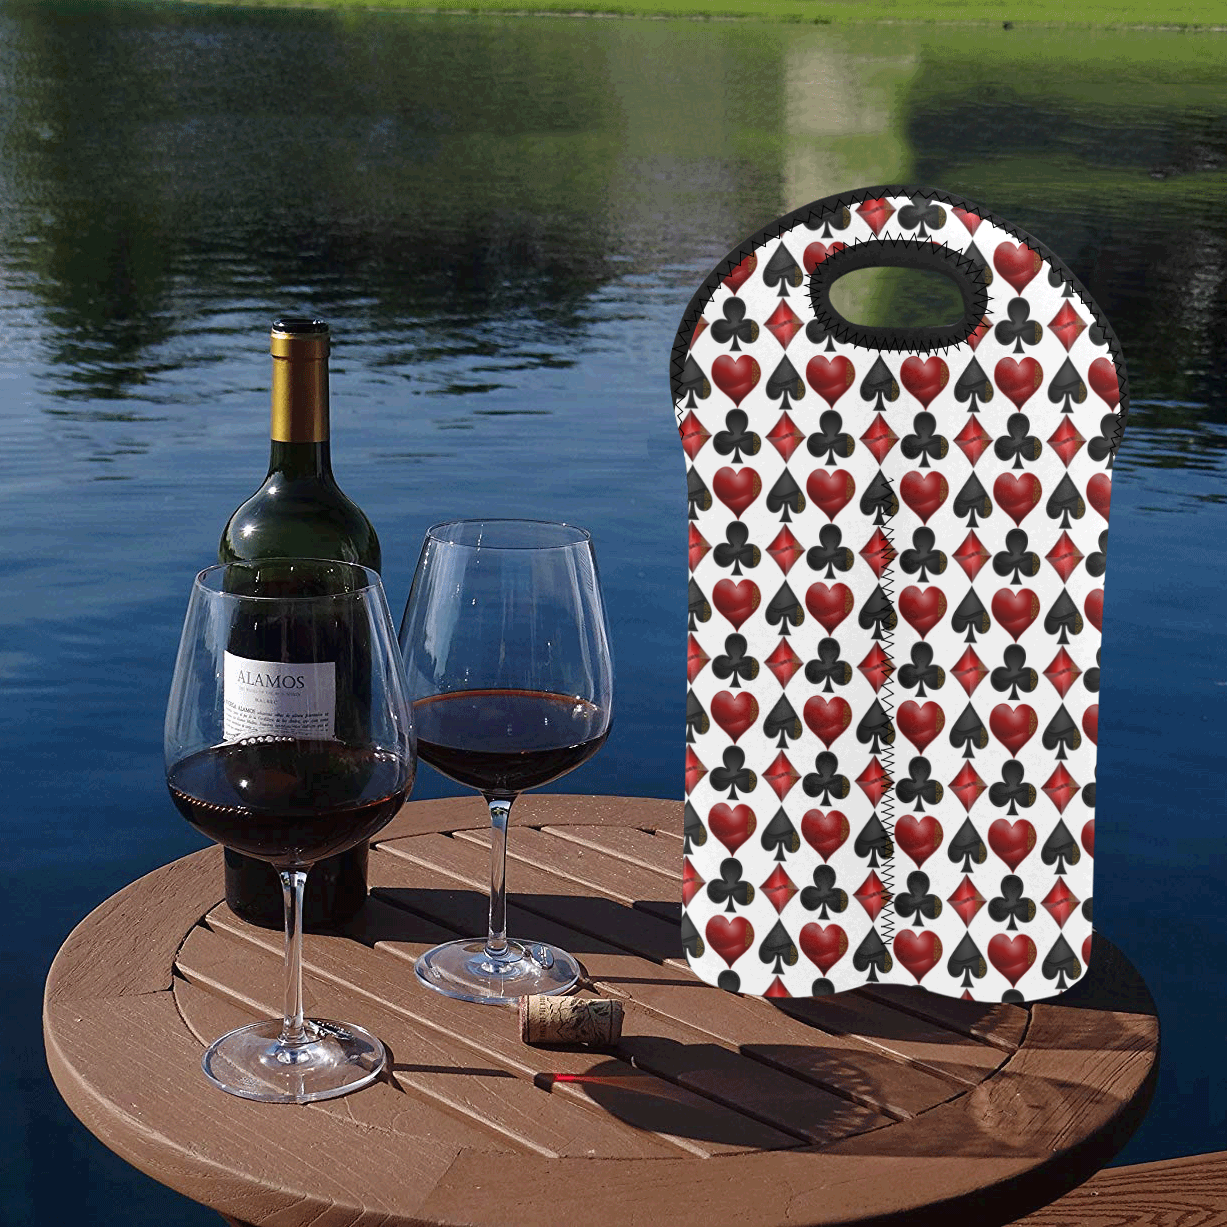 Las Vegas Black and Red Casino Poker Card Shapes on White 2-Bottle Neoprene Wine Bag